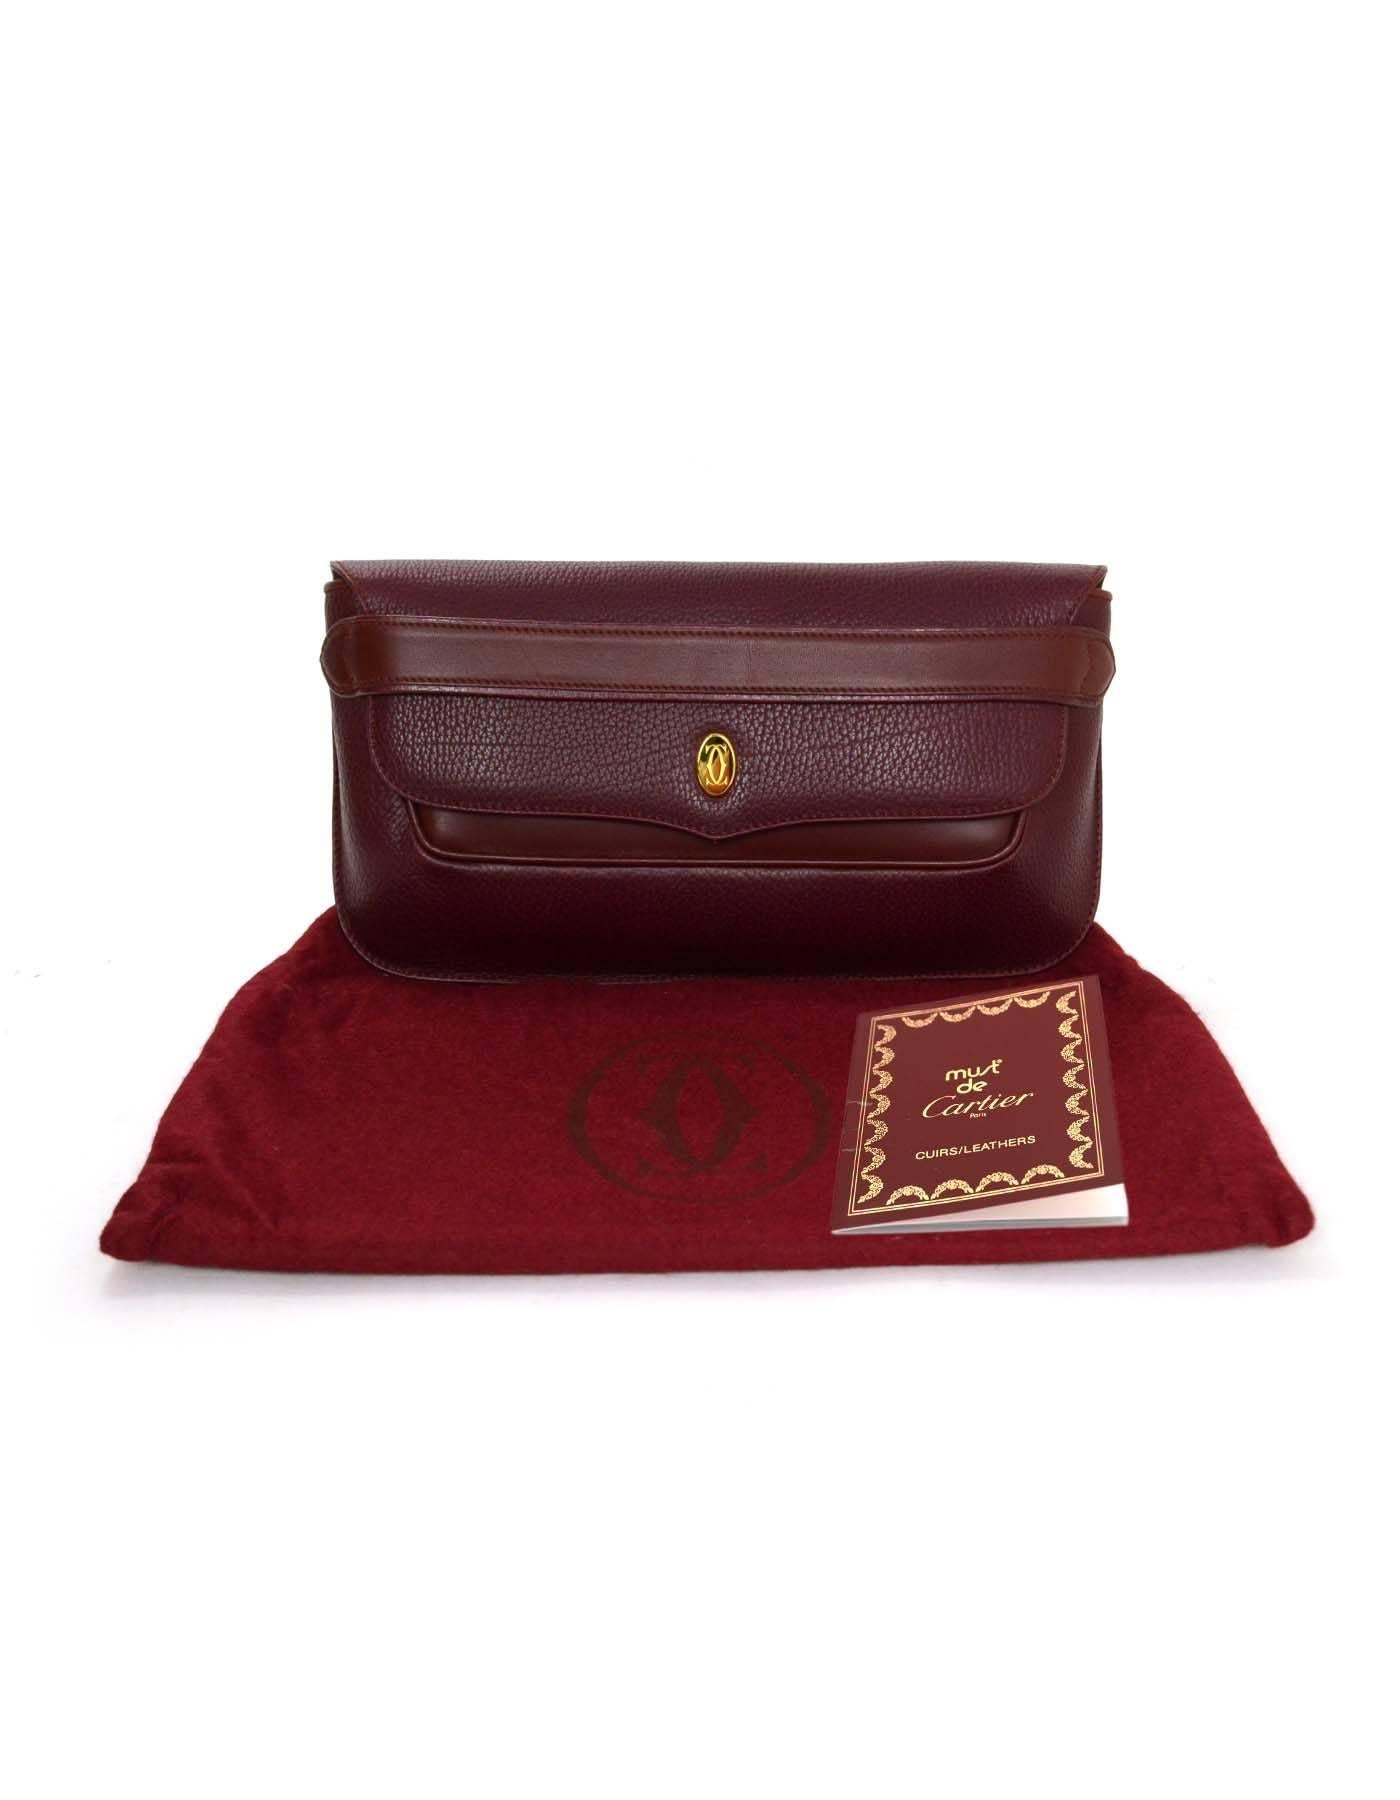 Cartier Burgundy Leather Vintage Envelope Clutch Bag GHW 3